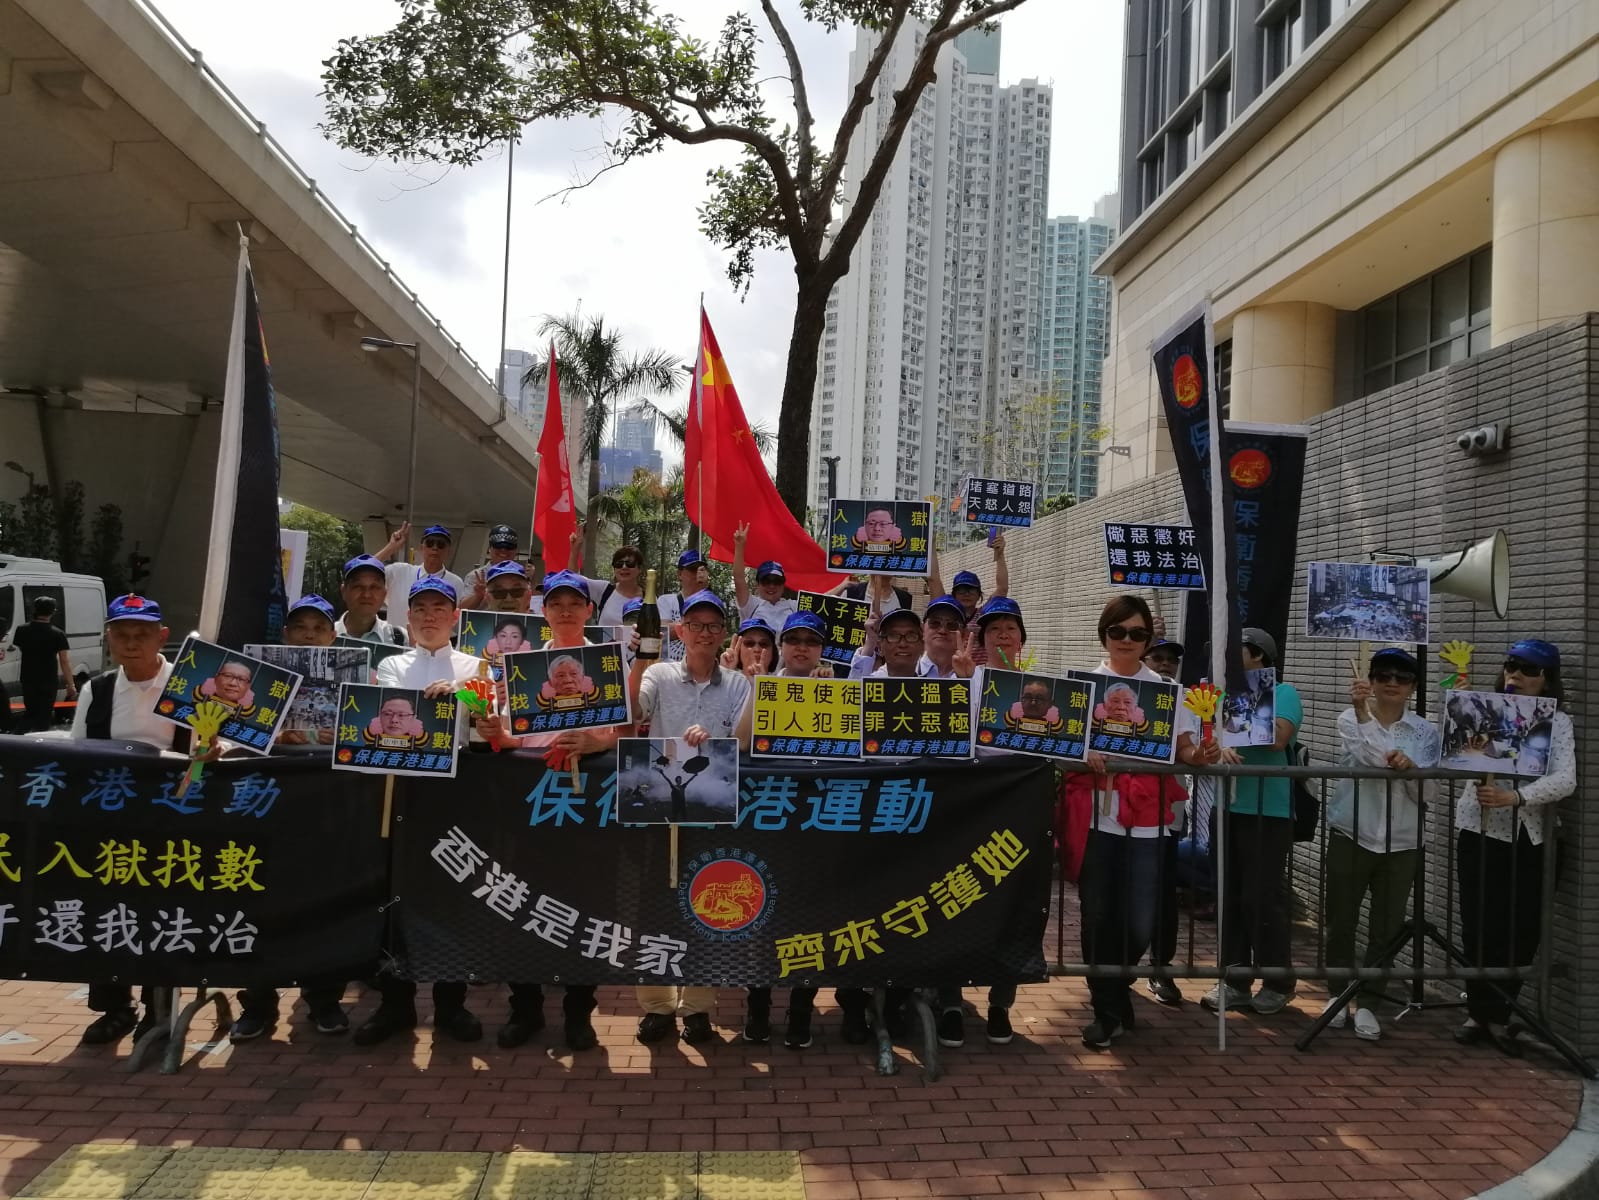 保衛香港運動 主辦「佔中暴民 入獄找數」集會